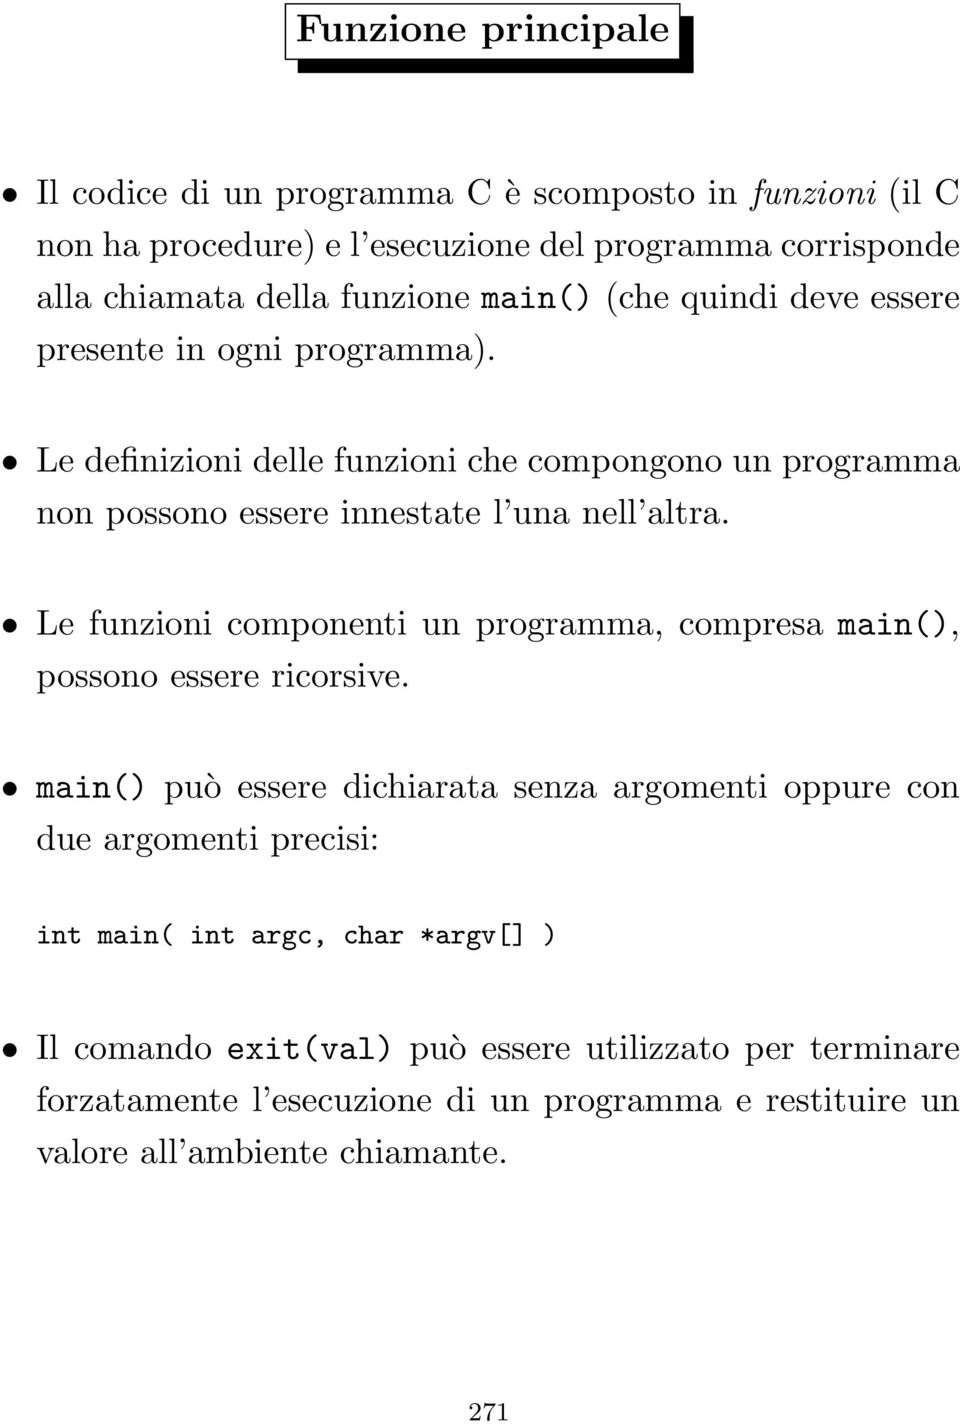 Le funzioni componenti un programma, compresa main(), possono essere ricorsive.